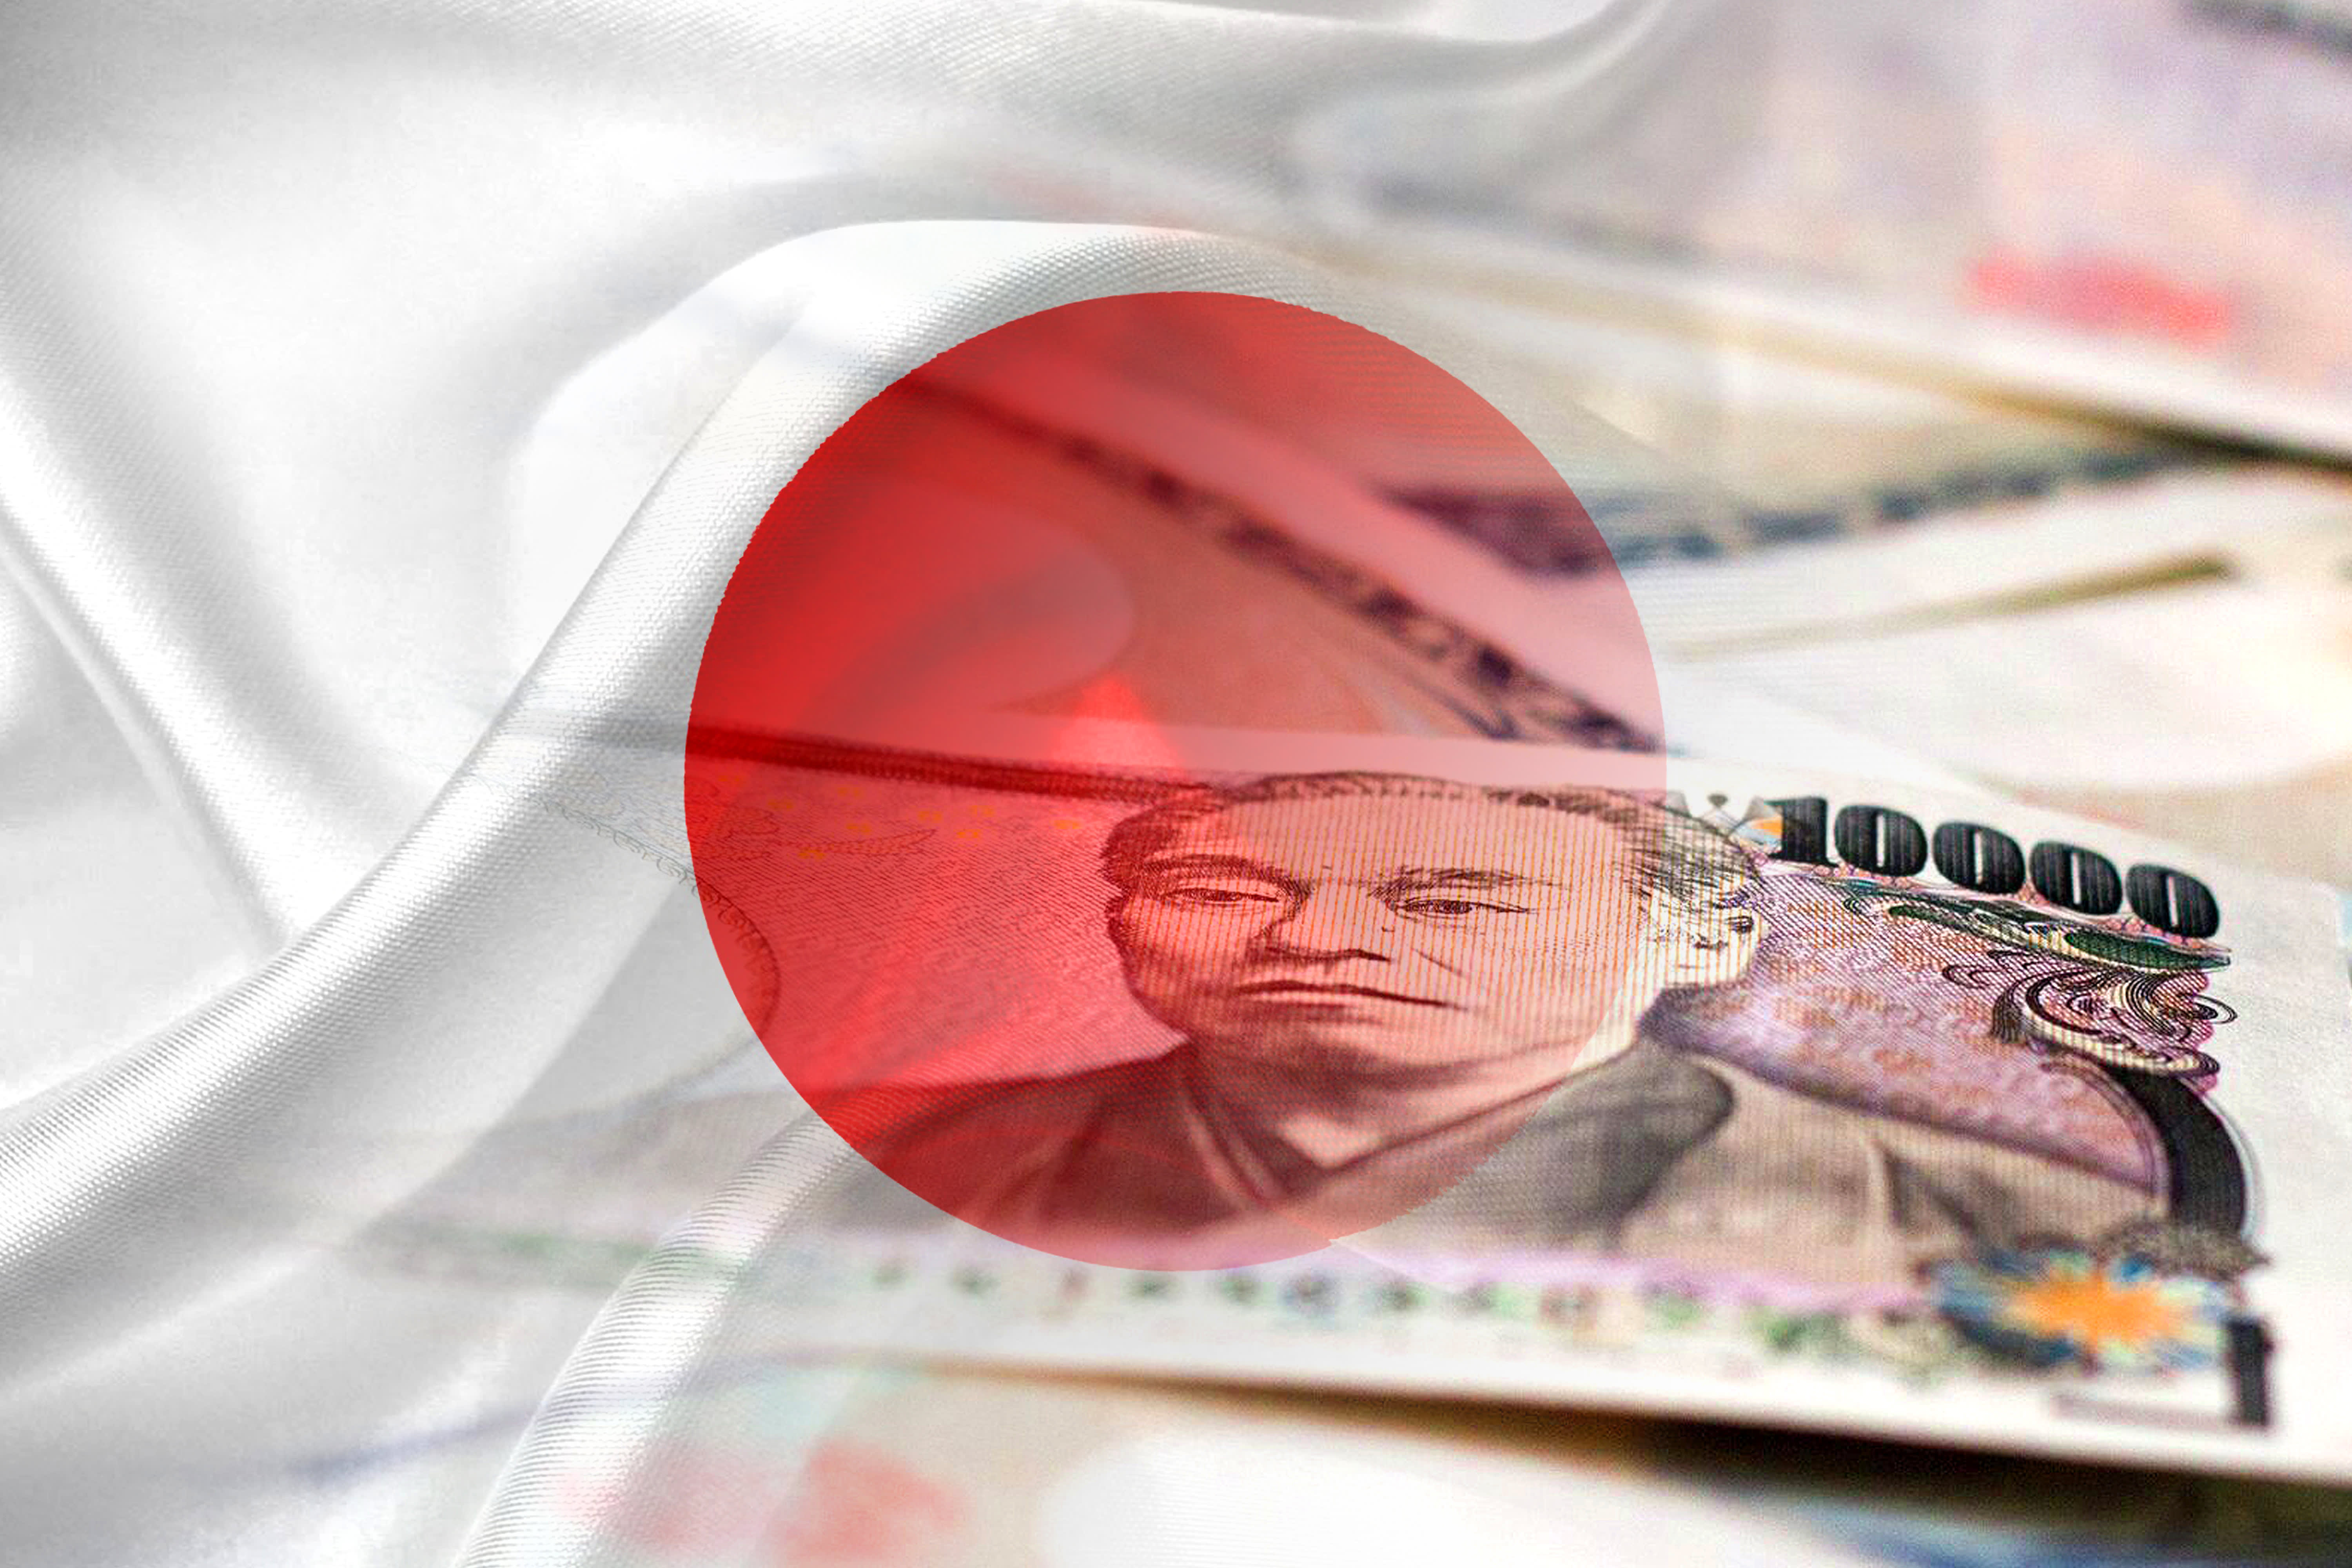 De Bank of Japan heeft op historische wijze een einde gemaakt aan het enige negatieve renteregime ter wereld